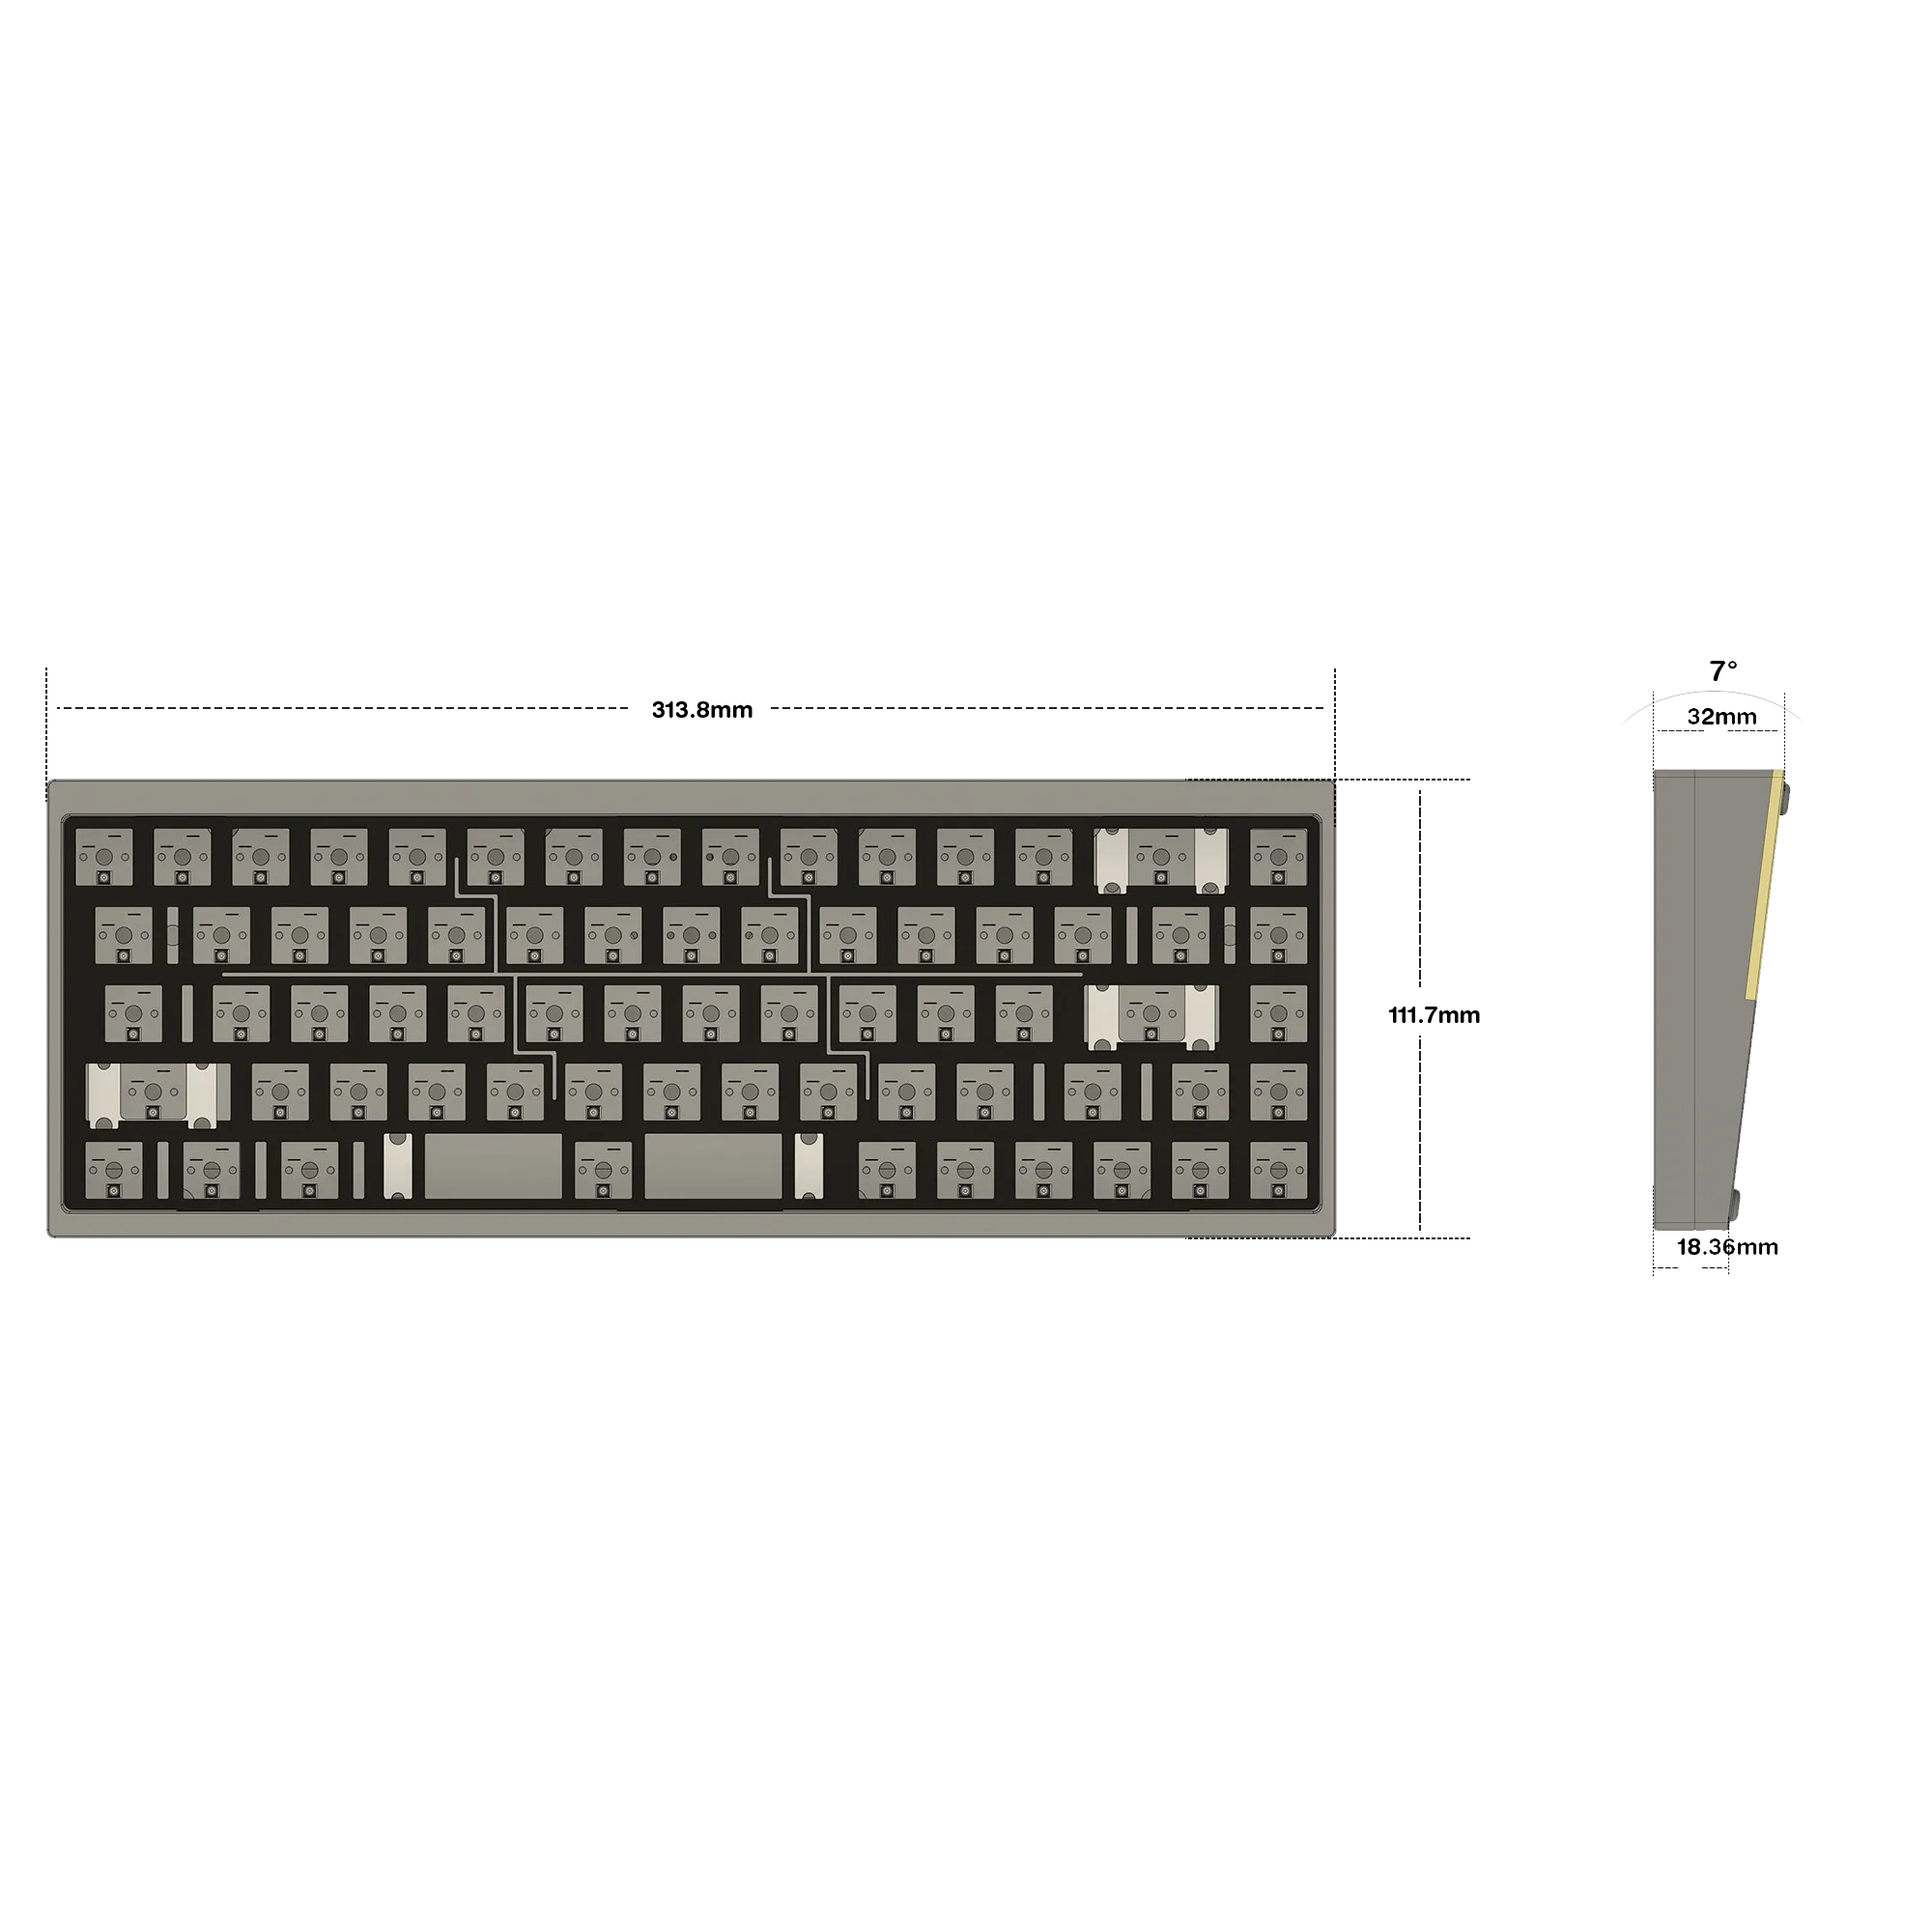 TOFU Jr Keyboard Kit